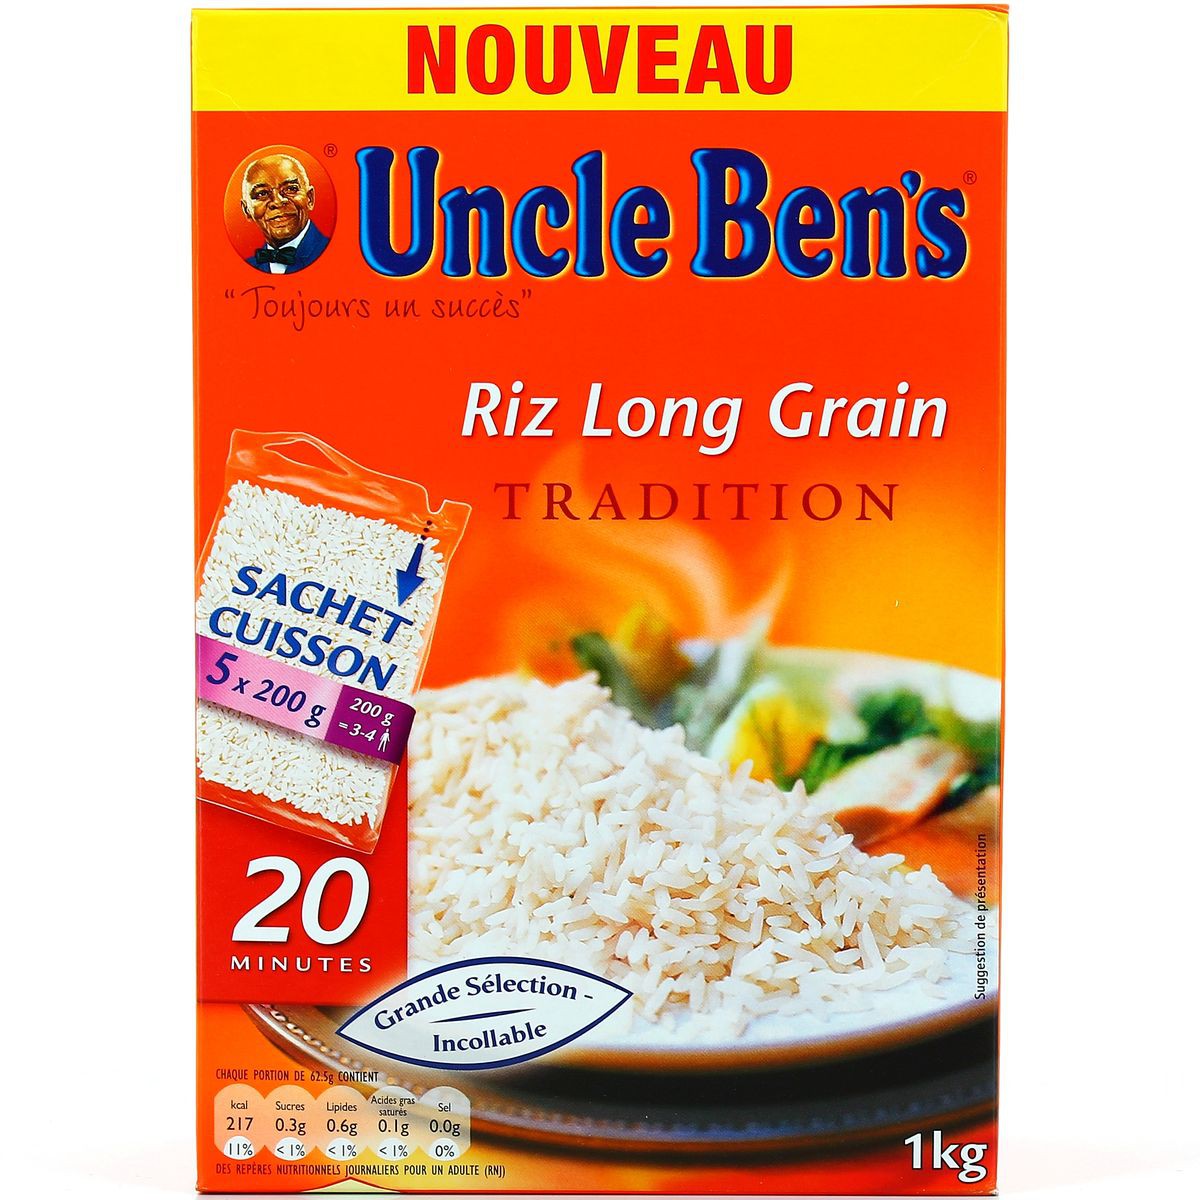 https://drhmarket.com/91213/1kg-riz-long-grain-sachet-cuisson-20-uncle-ben-s.jpg